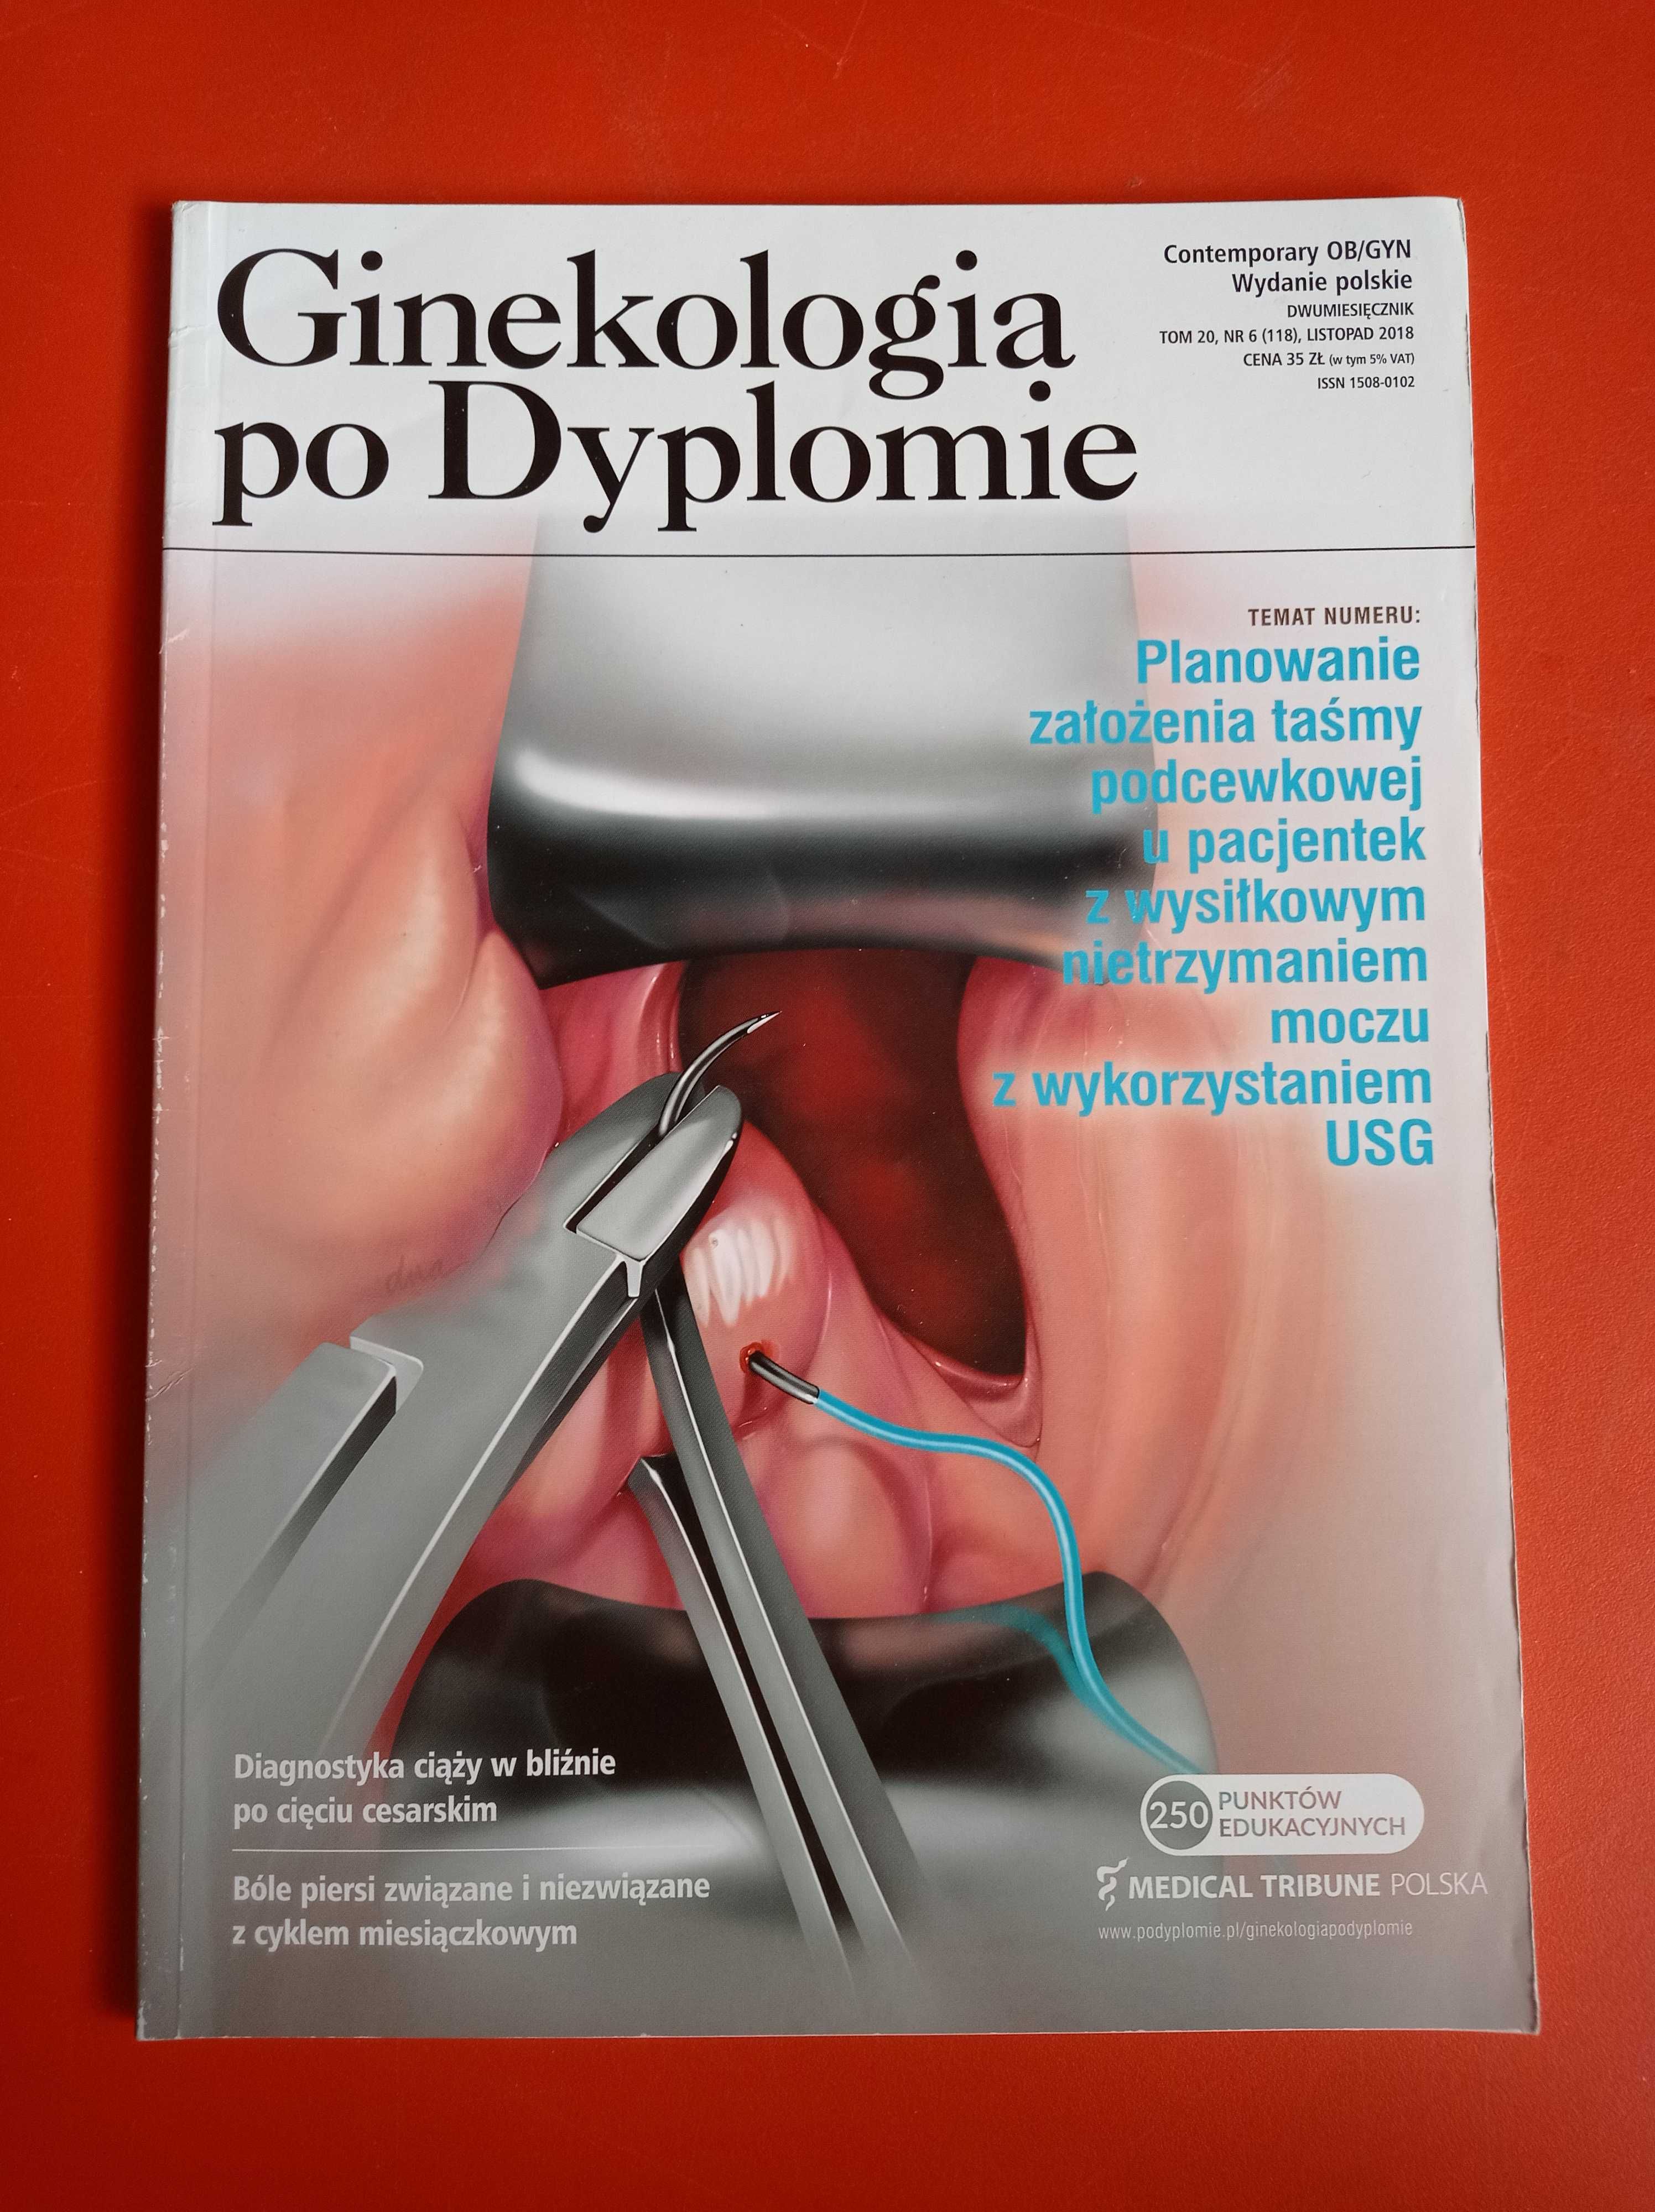 Ginekologia po dyplomie, nr 6, tom 20, listopad 2018